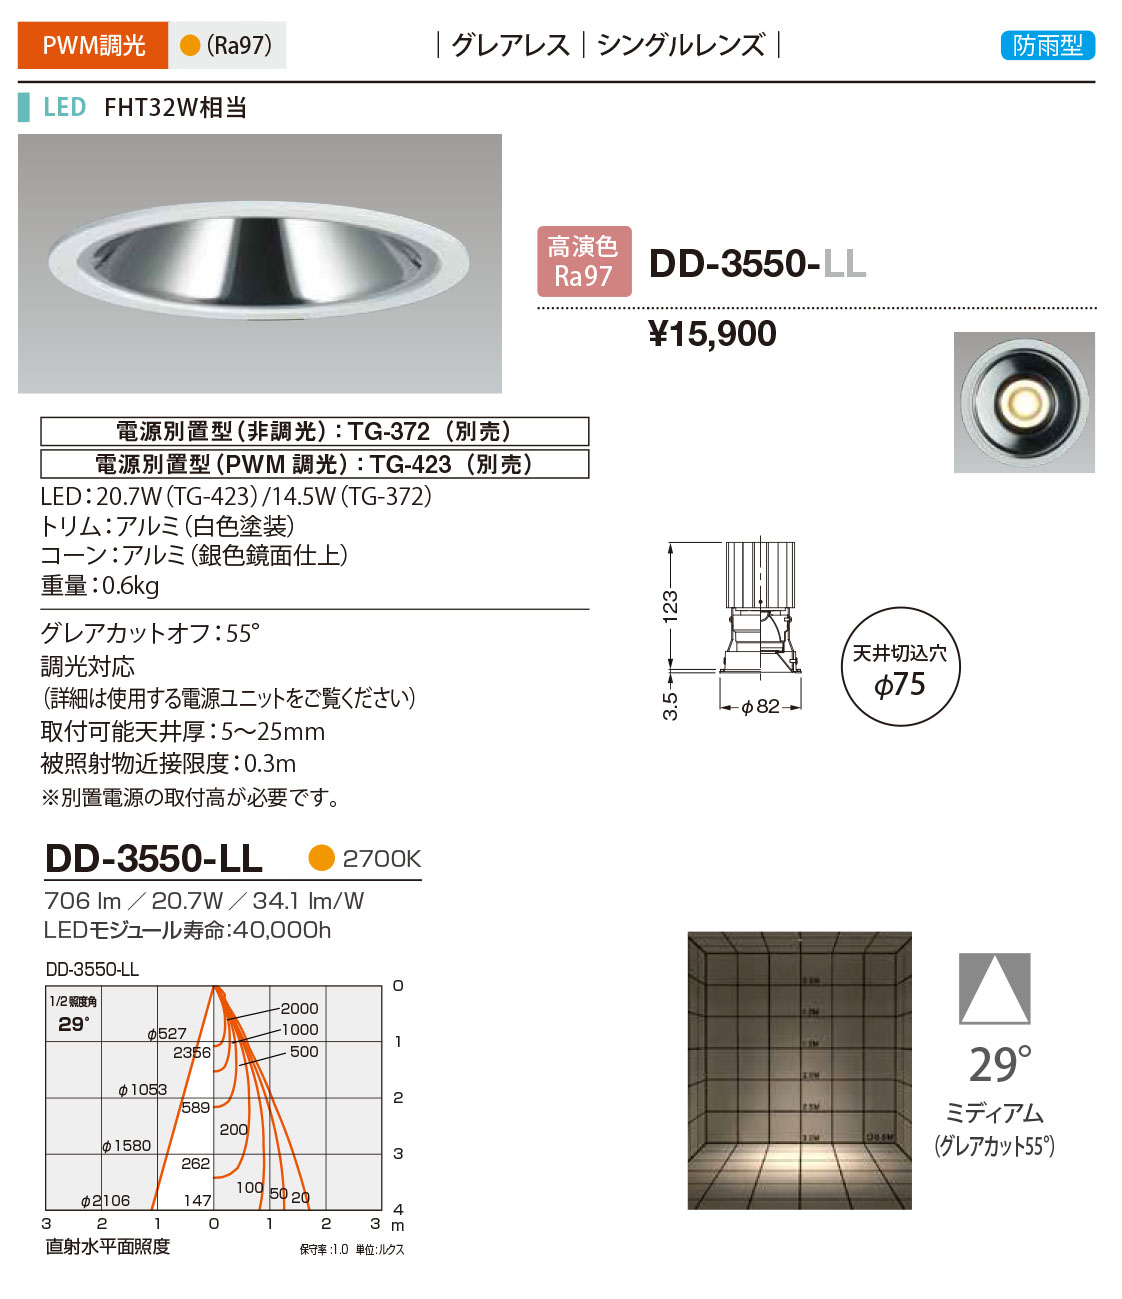 DD-3550-LL RcƖ p_ECg F 75 LED dF  29x